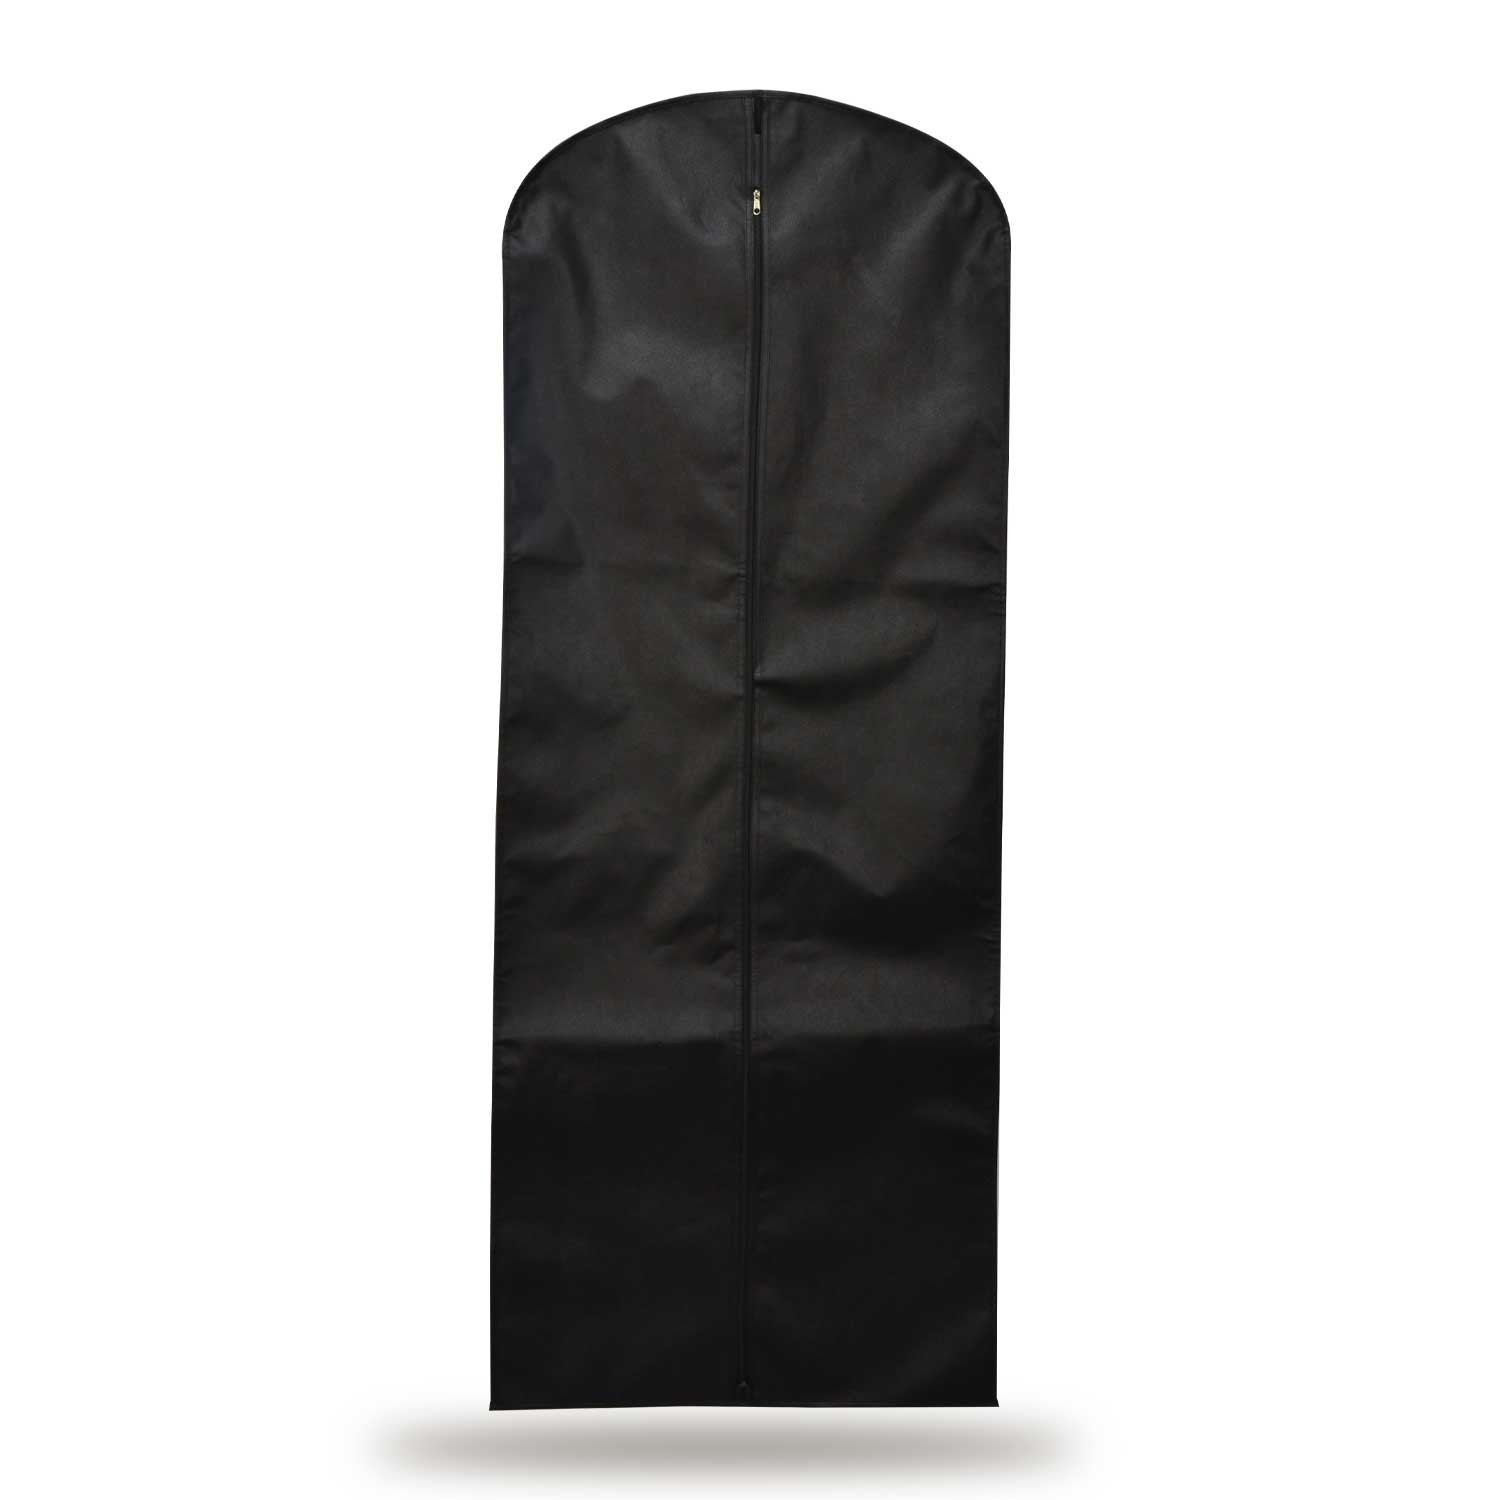 Gelinlik ,Elbise Kılıfı 62x120 Cm Açılabilir Körük Gamboç - Siyah